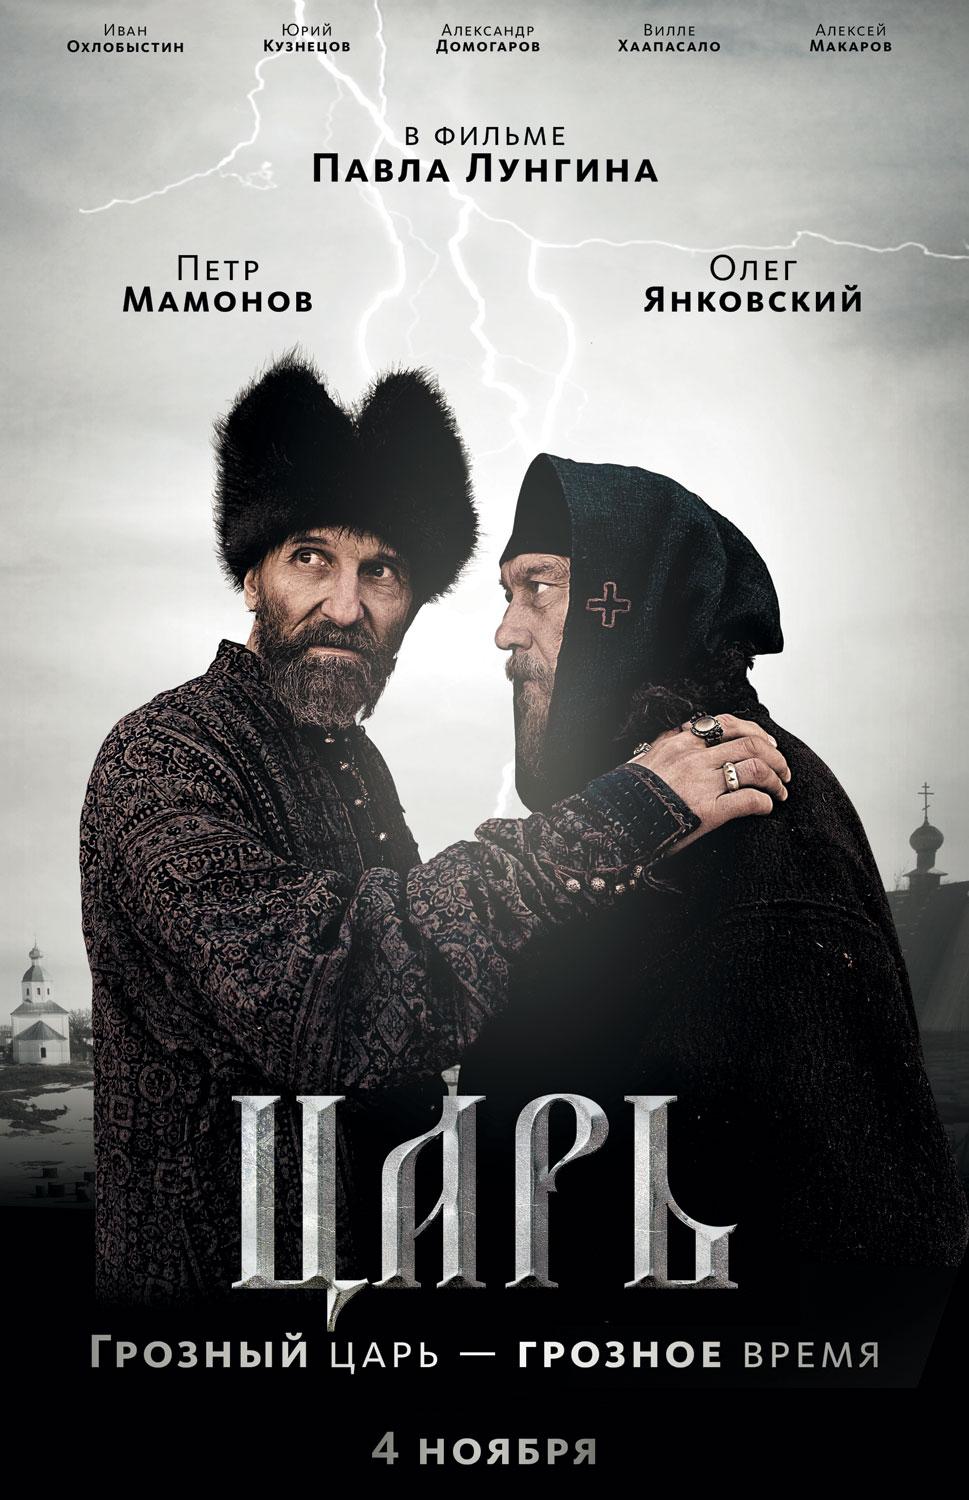 Az oroszok már a Kino műsorán